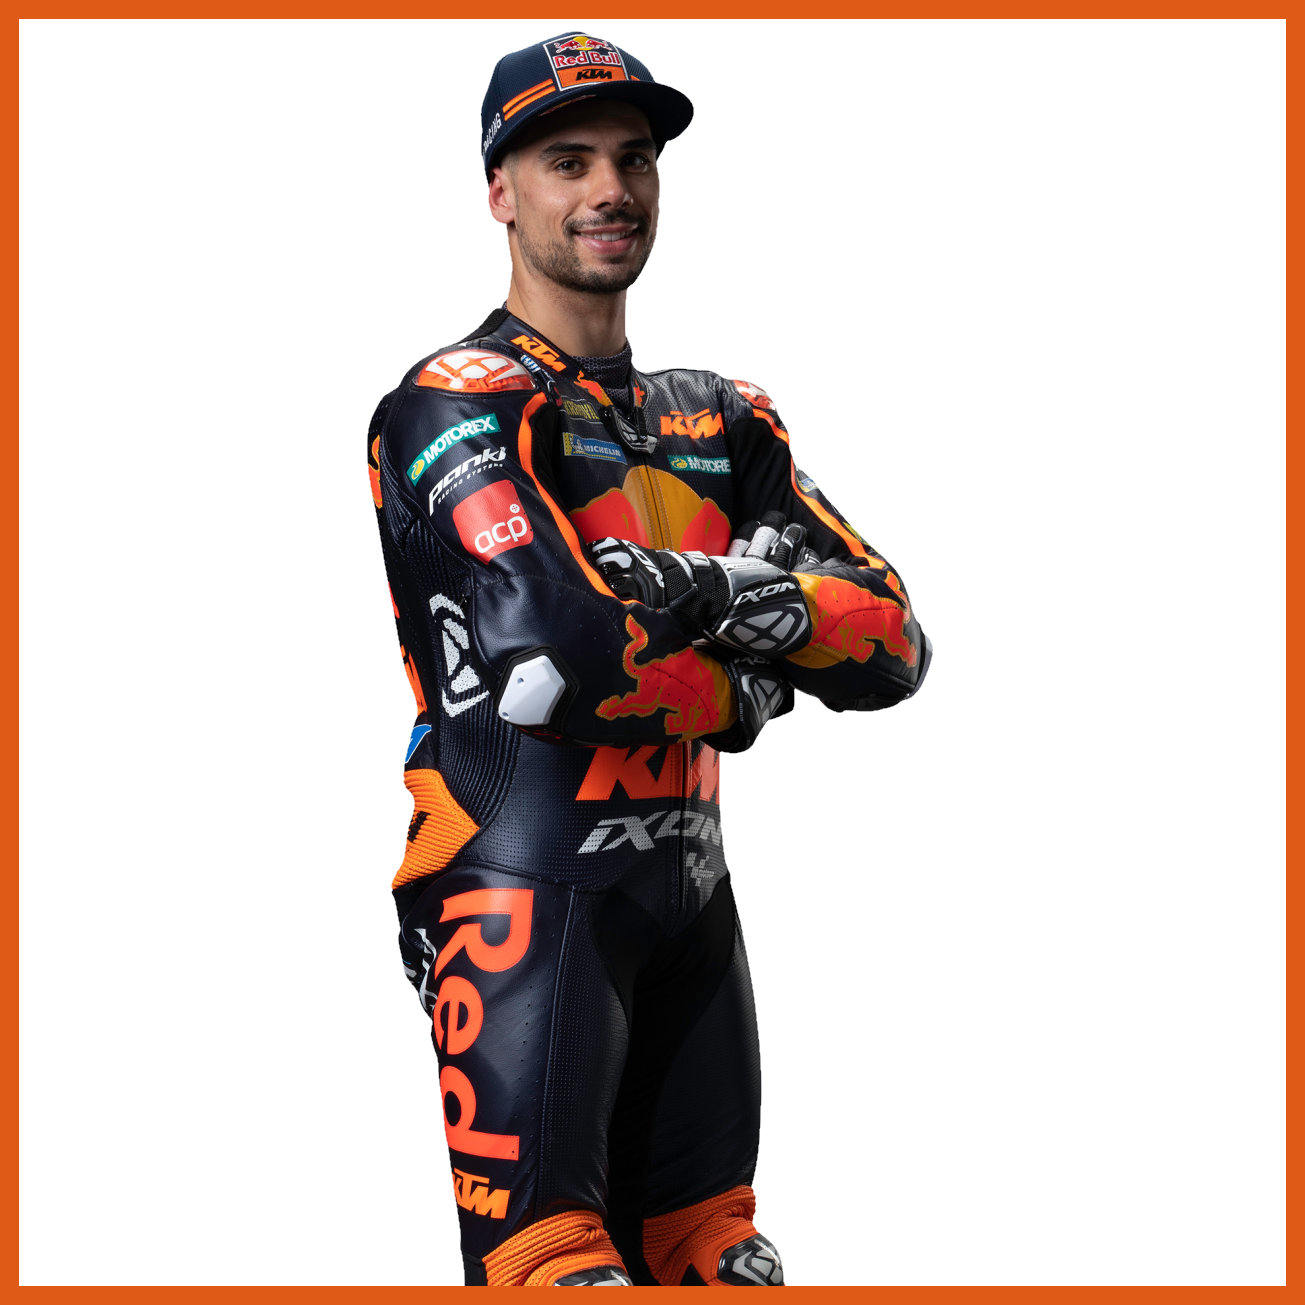 MotoGP 2022 chặng 2 đua chính: Miguel Oliveira chiến thắng